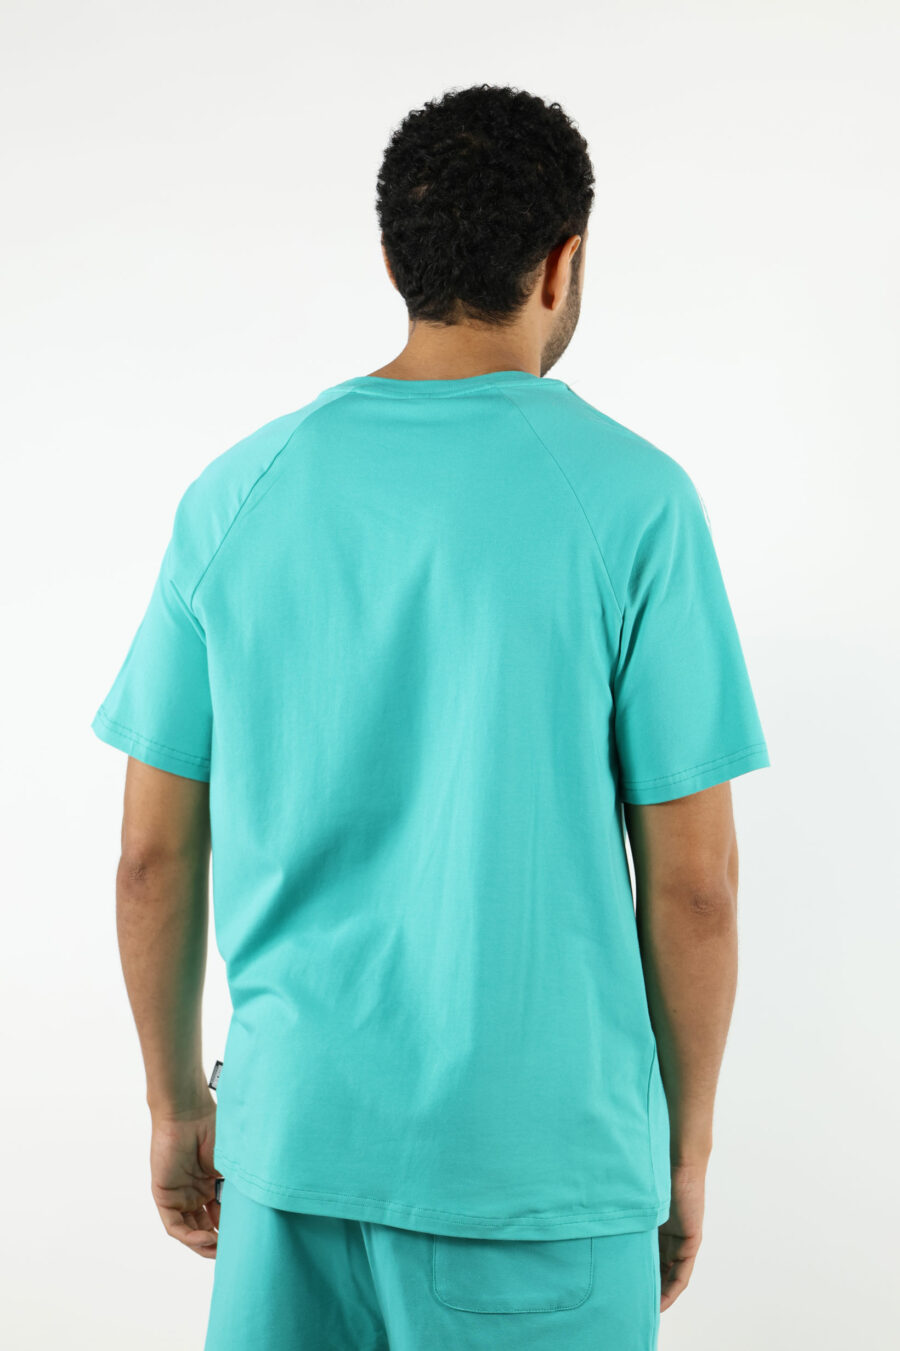 T-shirt azul água-marinha com o logótipo do urso "underbear" na faixa do ombro - 111008